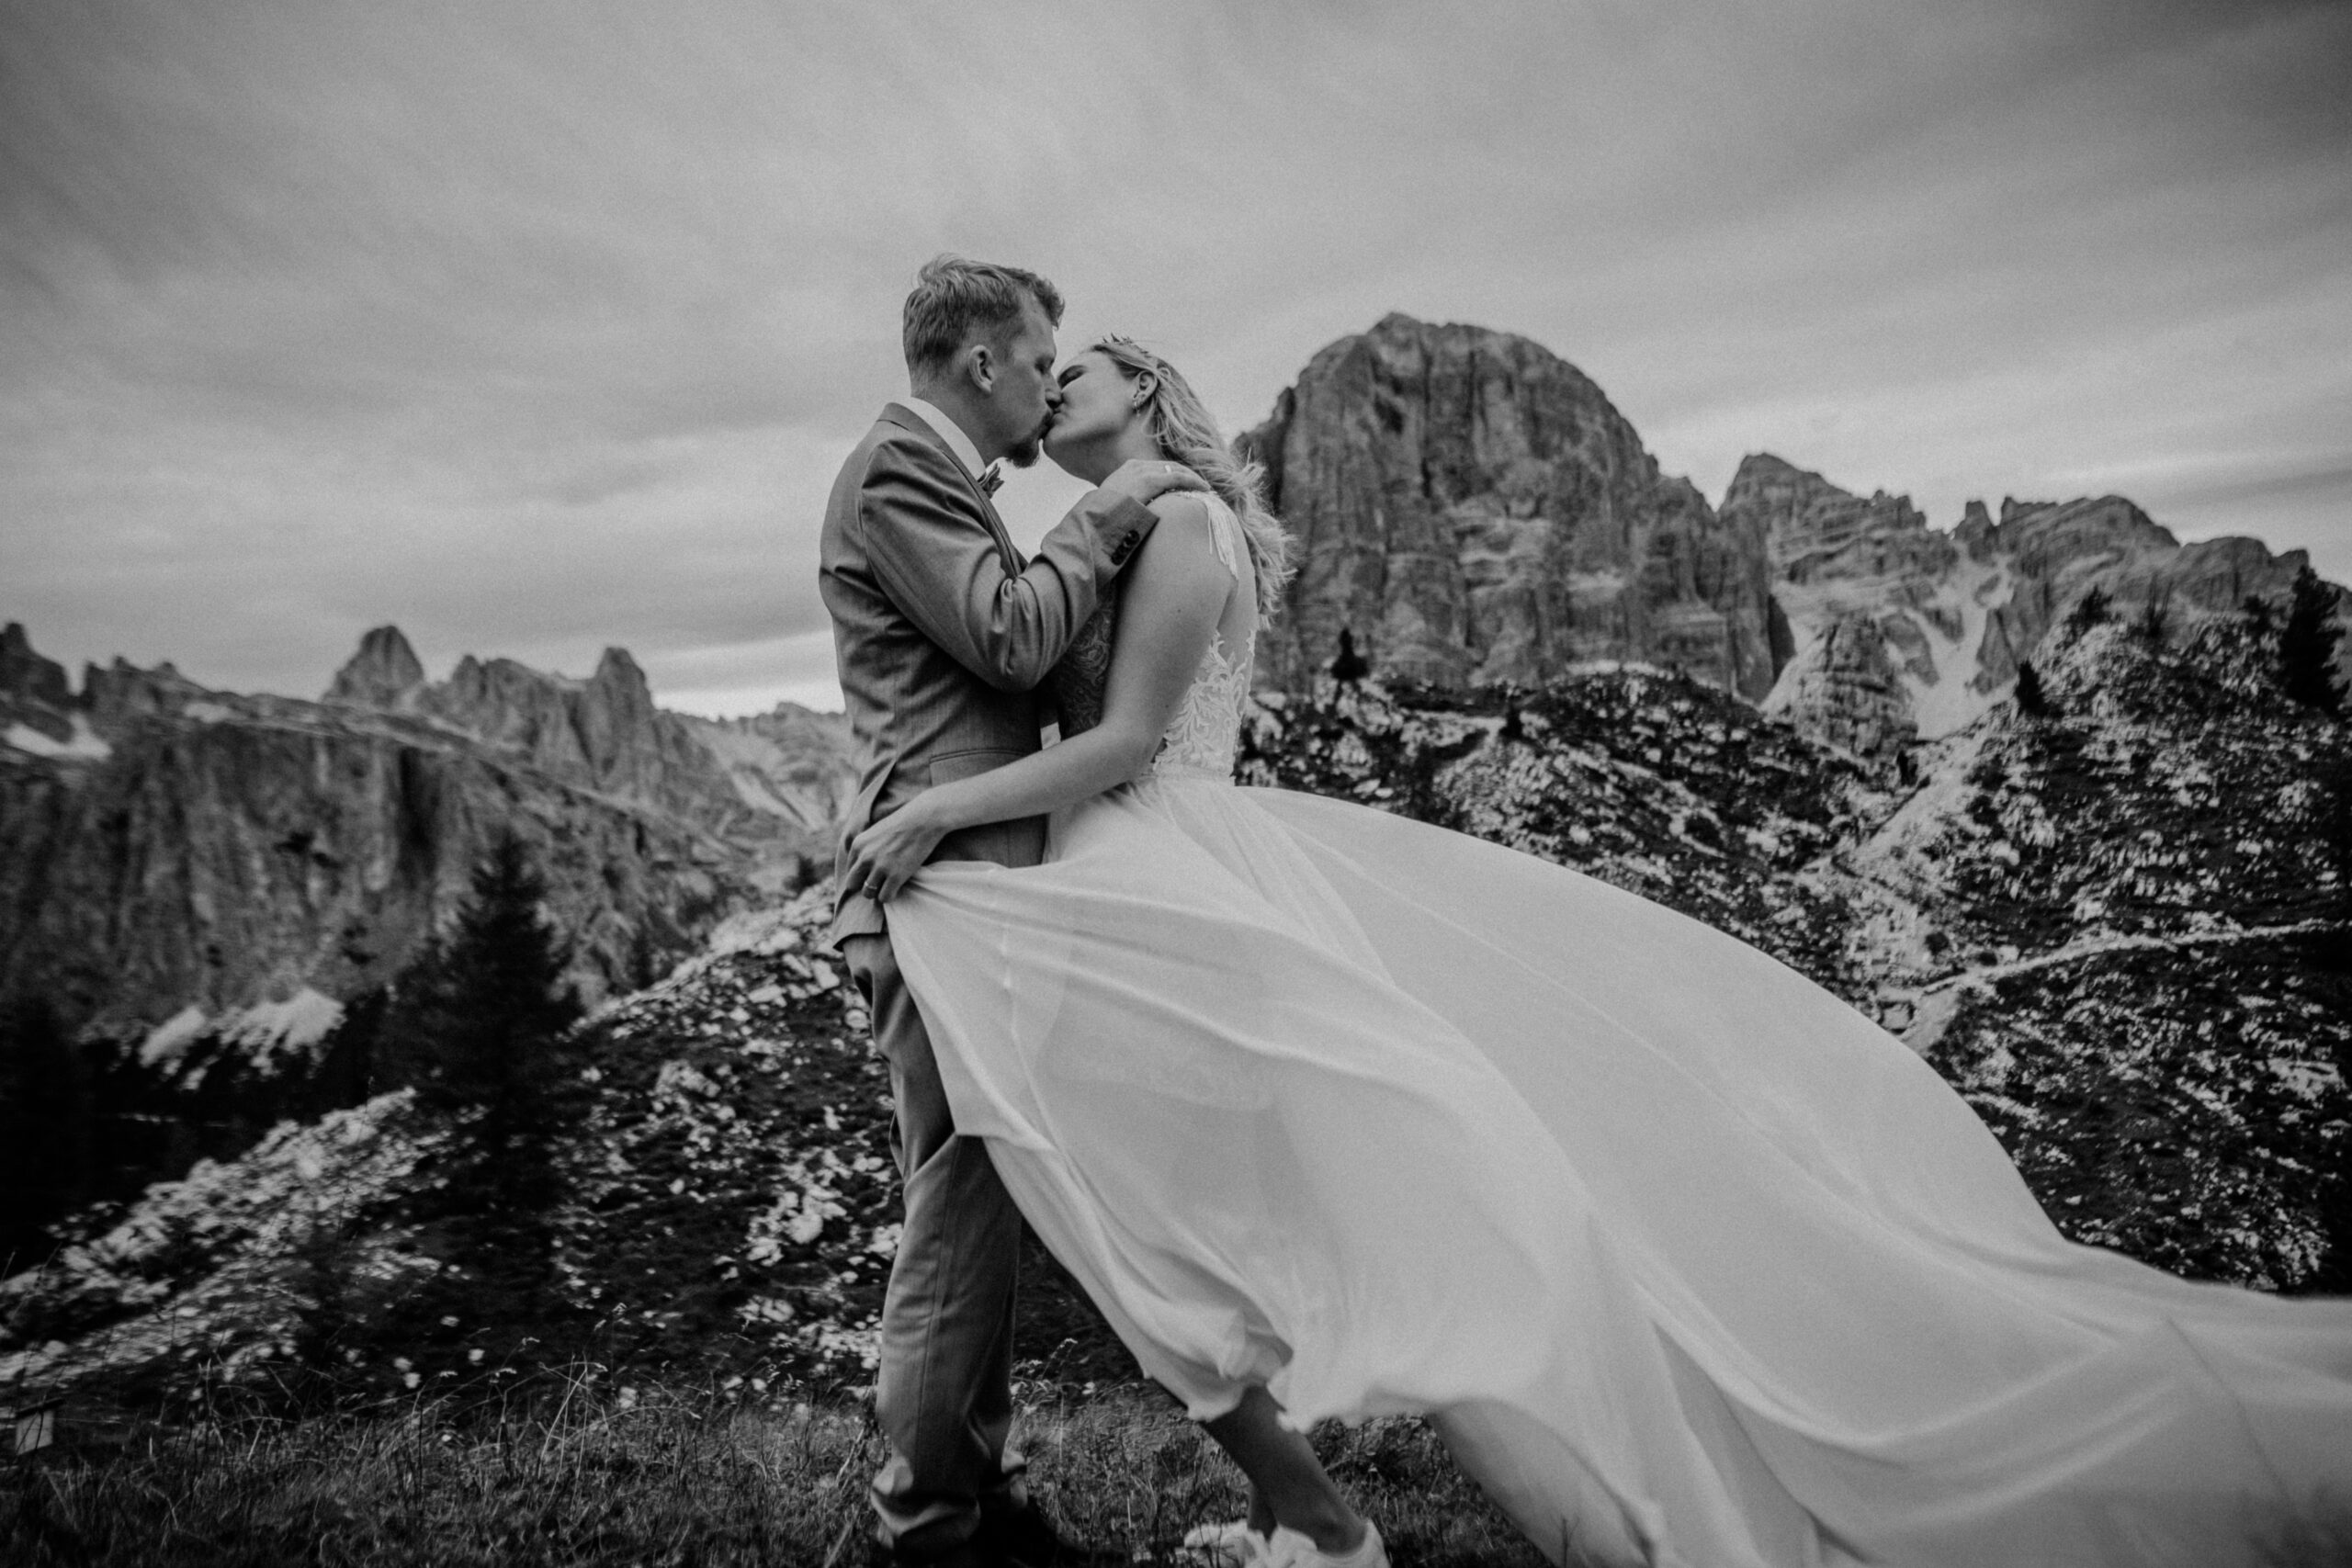 Mit einem maßgeschneiderten Kleid von Atelier Katalin aus Kufstein, freute sich dieses Brautpaar über tolle Hochzeitsbilder auf den Tiroler Bergen.